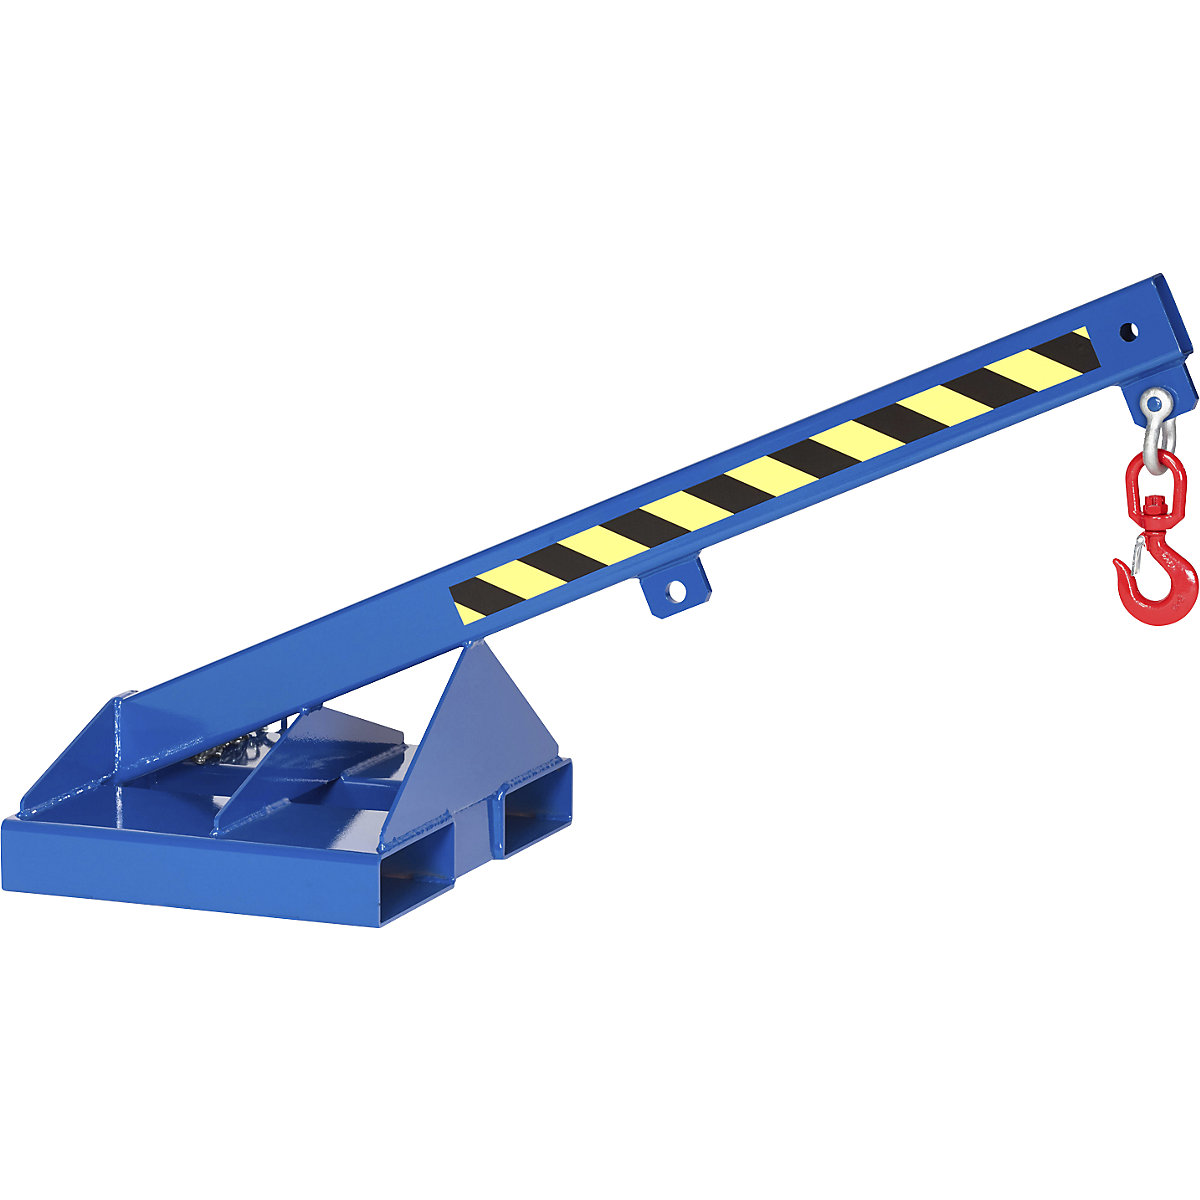 Braço de carga com gancho de carga rotativo, azul genciana RAL 5010, inclinação 25°, capacidade de carga 1000 kg-5